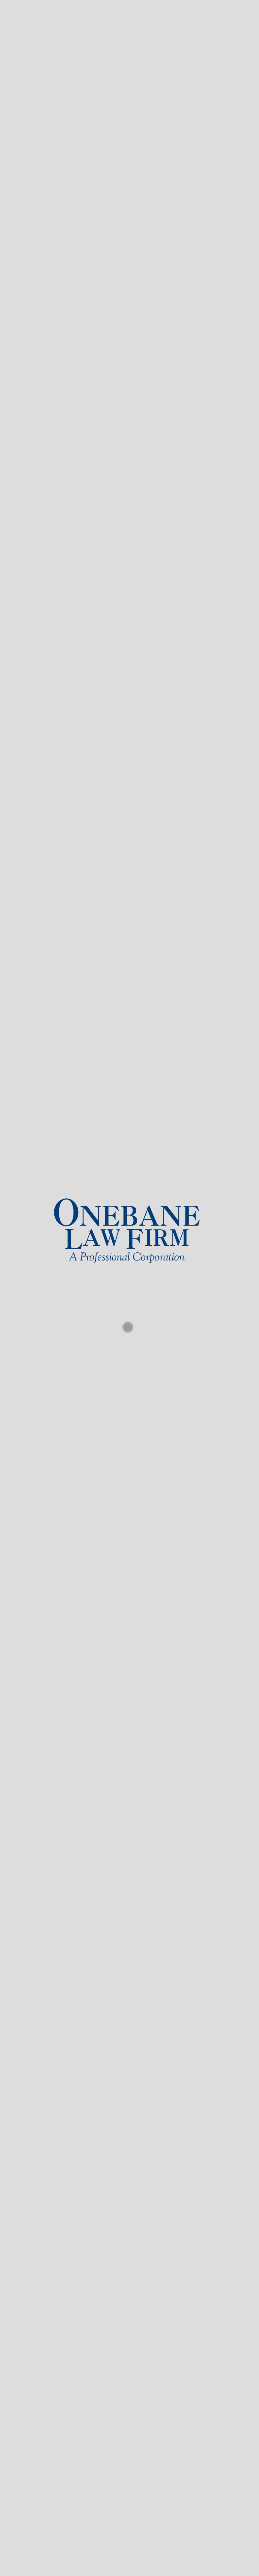 Onebane Law Firm - Lafayette LA Lawyers